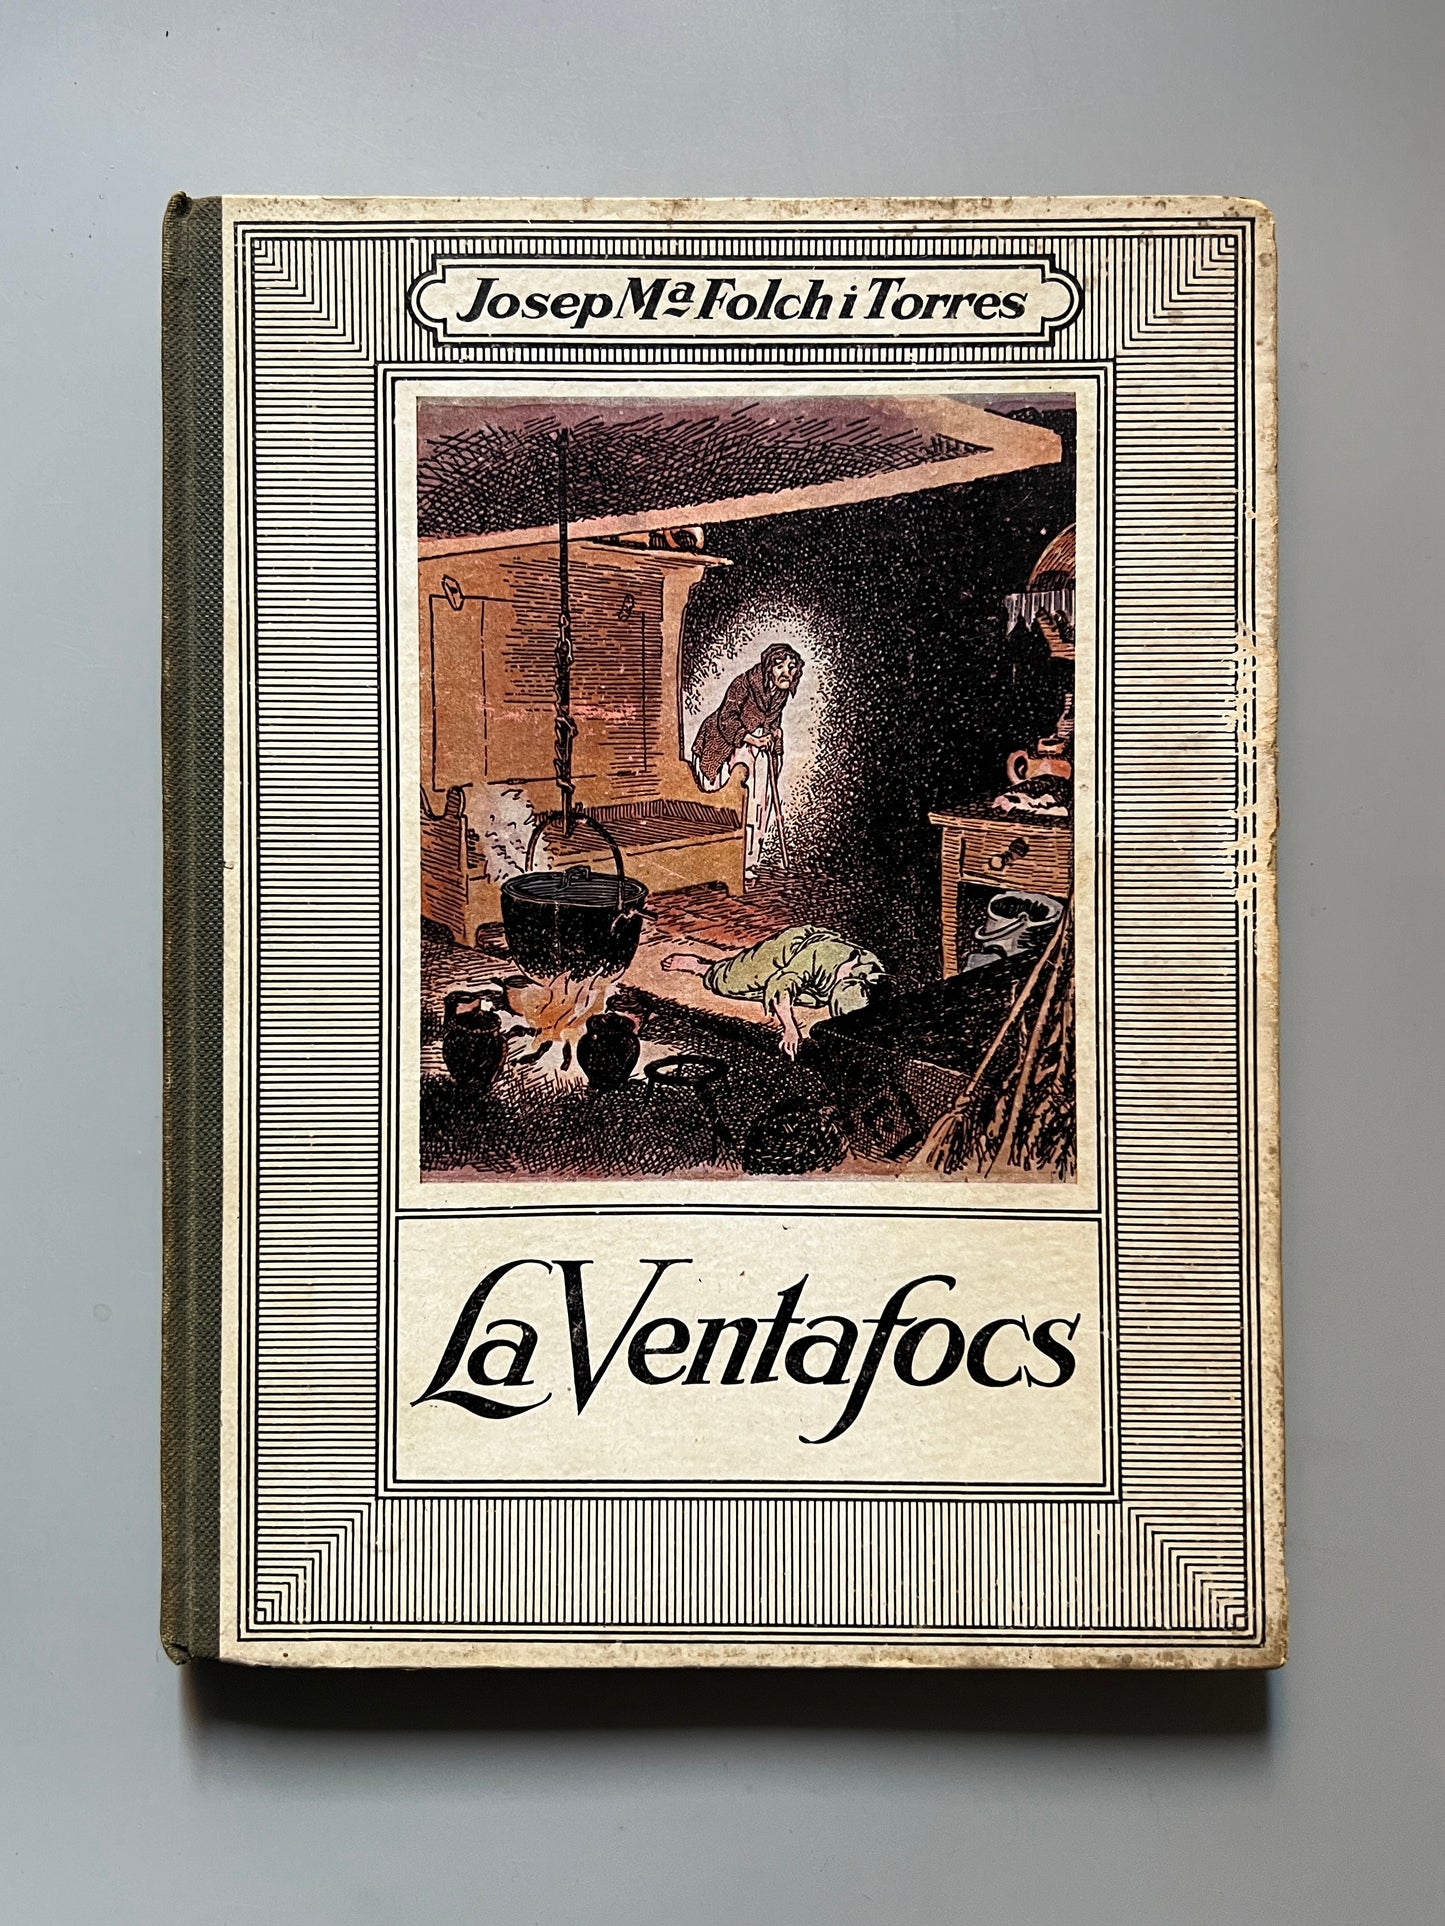 La Ventafocs, Josep Mª Folch i Torres - Editorial Mentora, ca. 1930